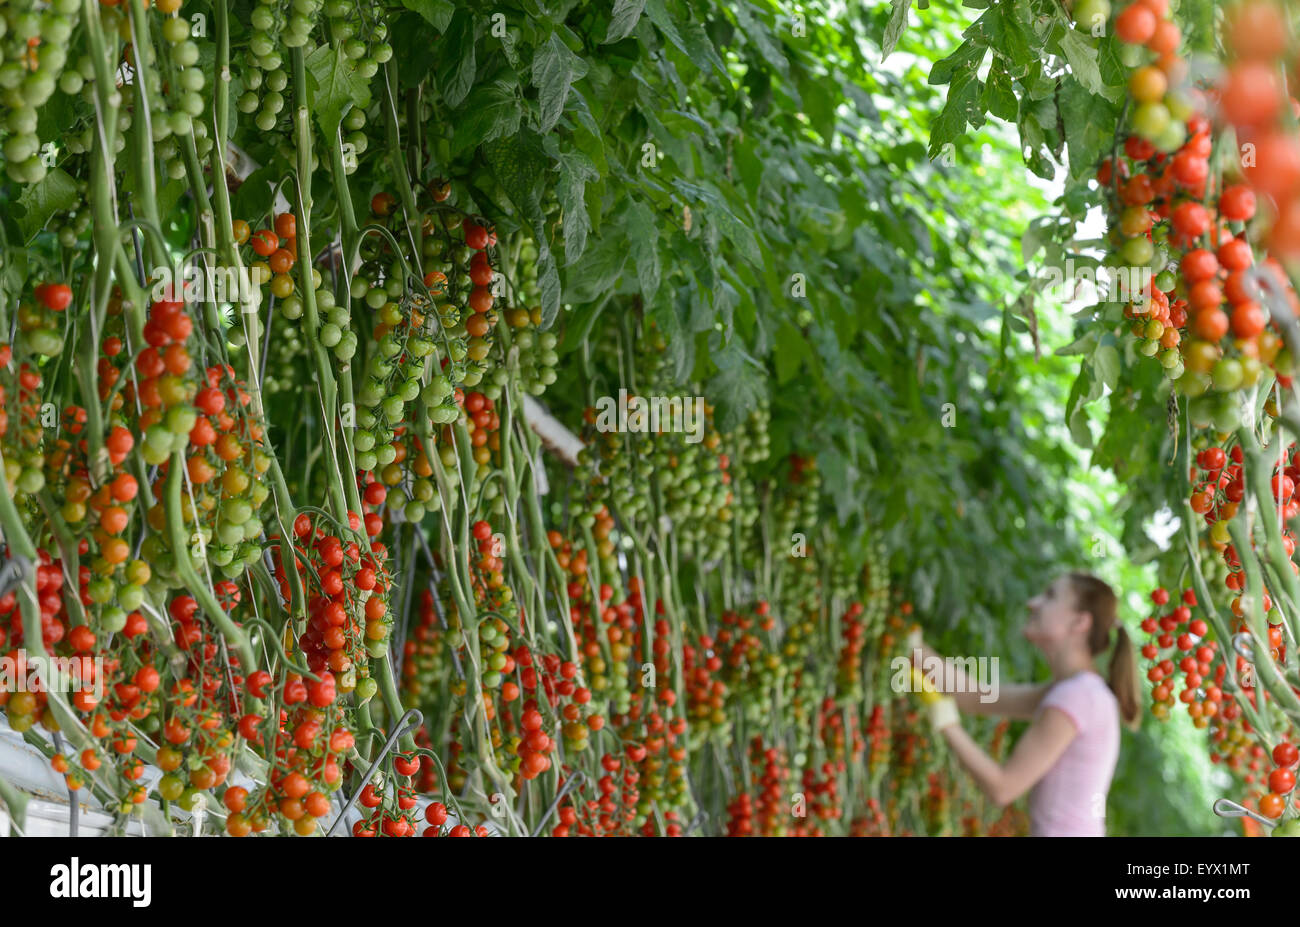 La Tomates cultivées dans d'immenses serres dans la campagne du Worcestershire. Les tomates sont cueillies et avaient tendance à par les travailleurs immigrés saisonniers Banque D'Images